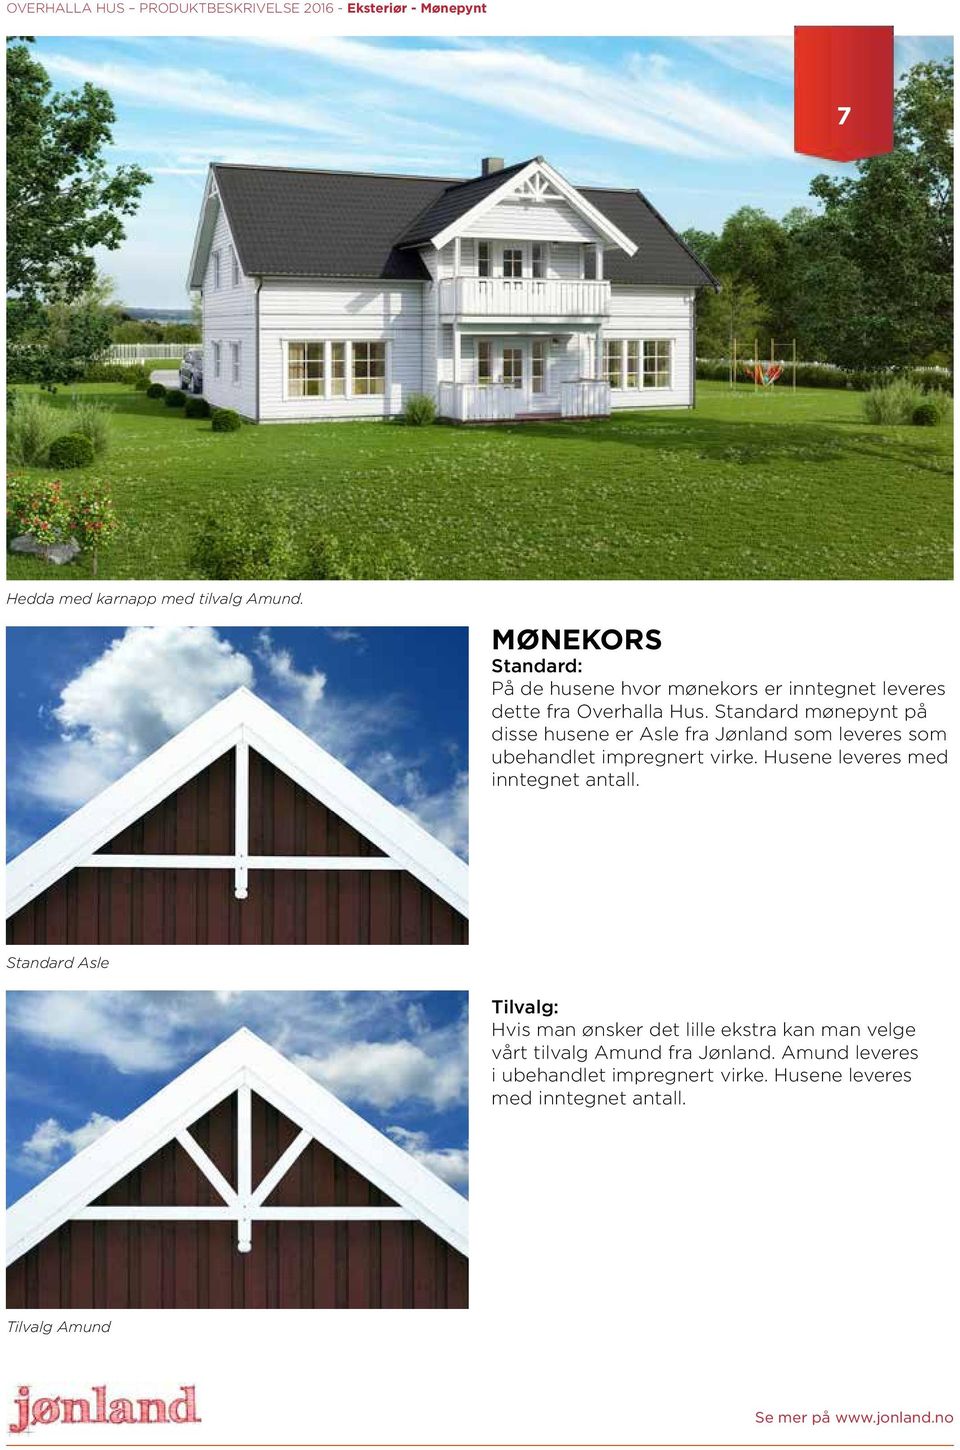 Standard mønepynt på disse husene er Asle fra Jønland som leveres som ubehandlet impregnert virke. Husene leveres med inntegnet antall.